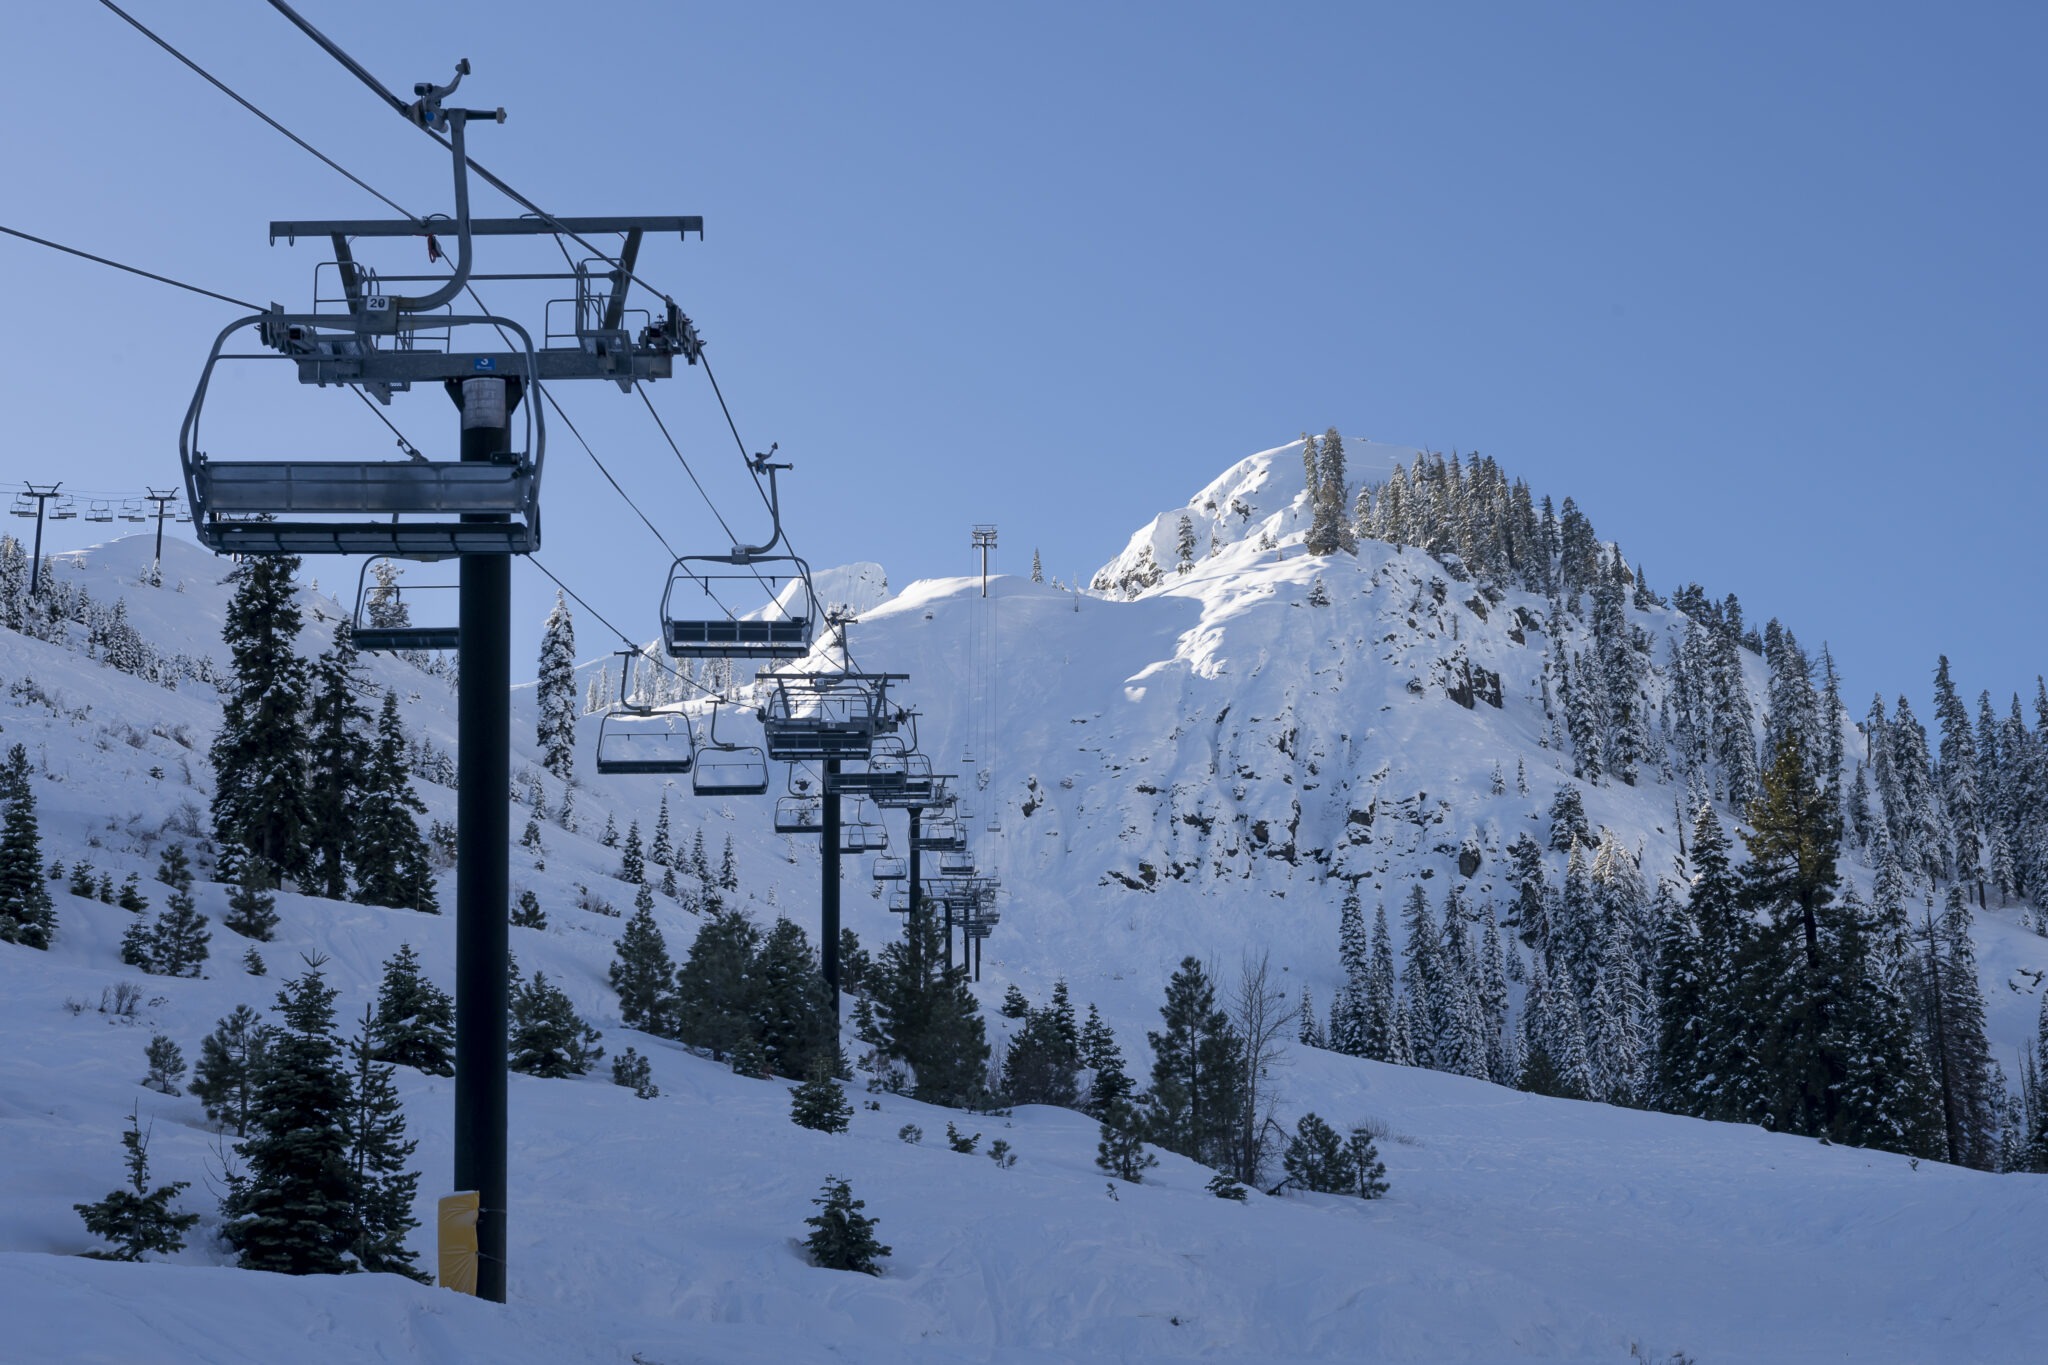 Palisades Tahoe hosting Men’s World Cup ski event